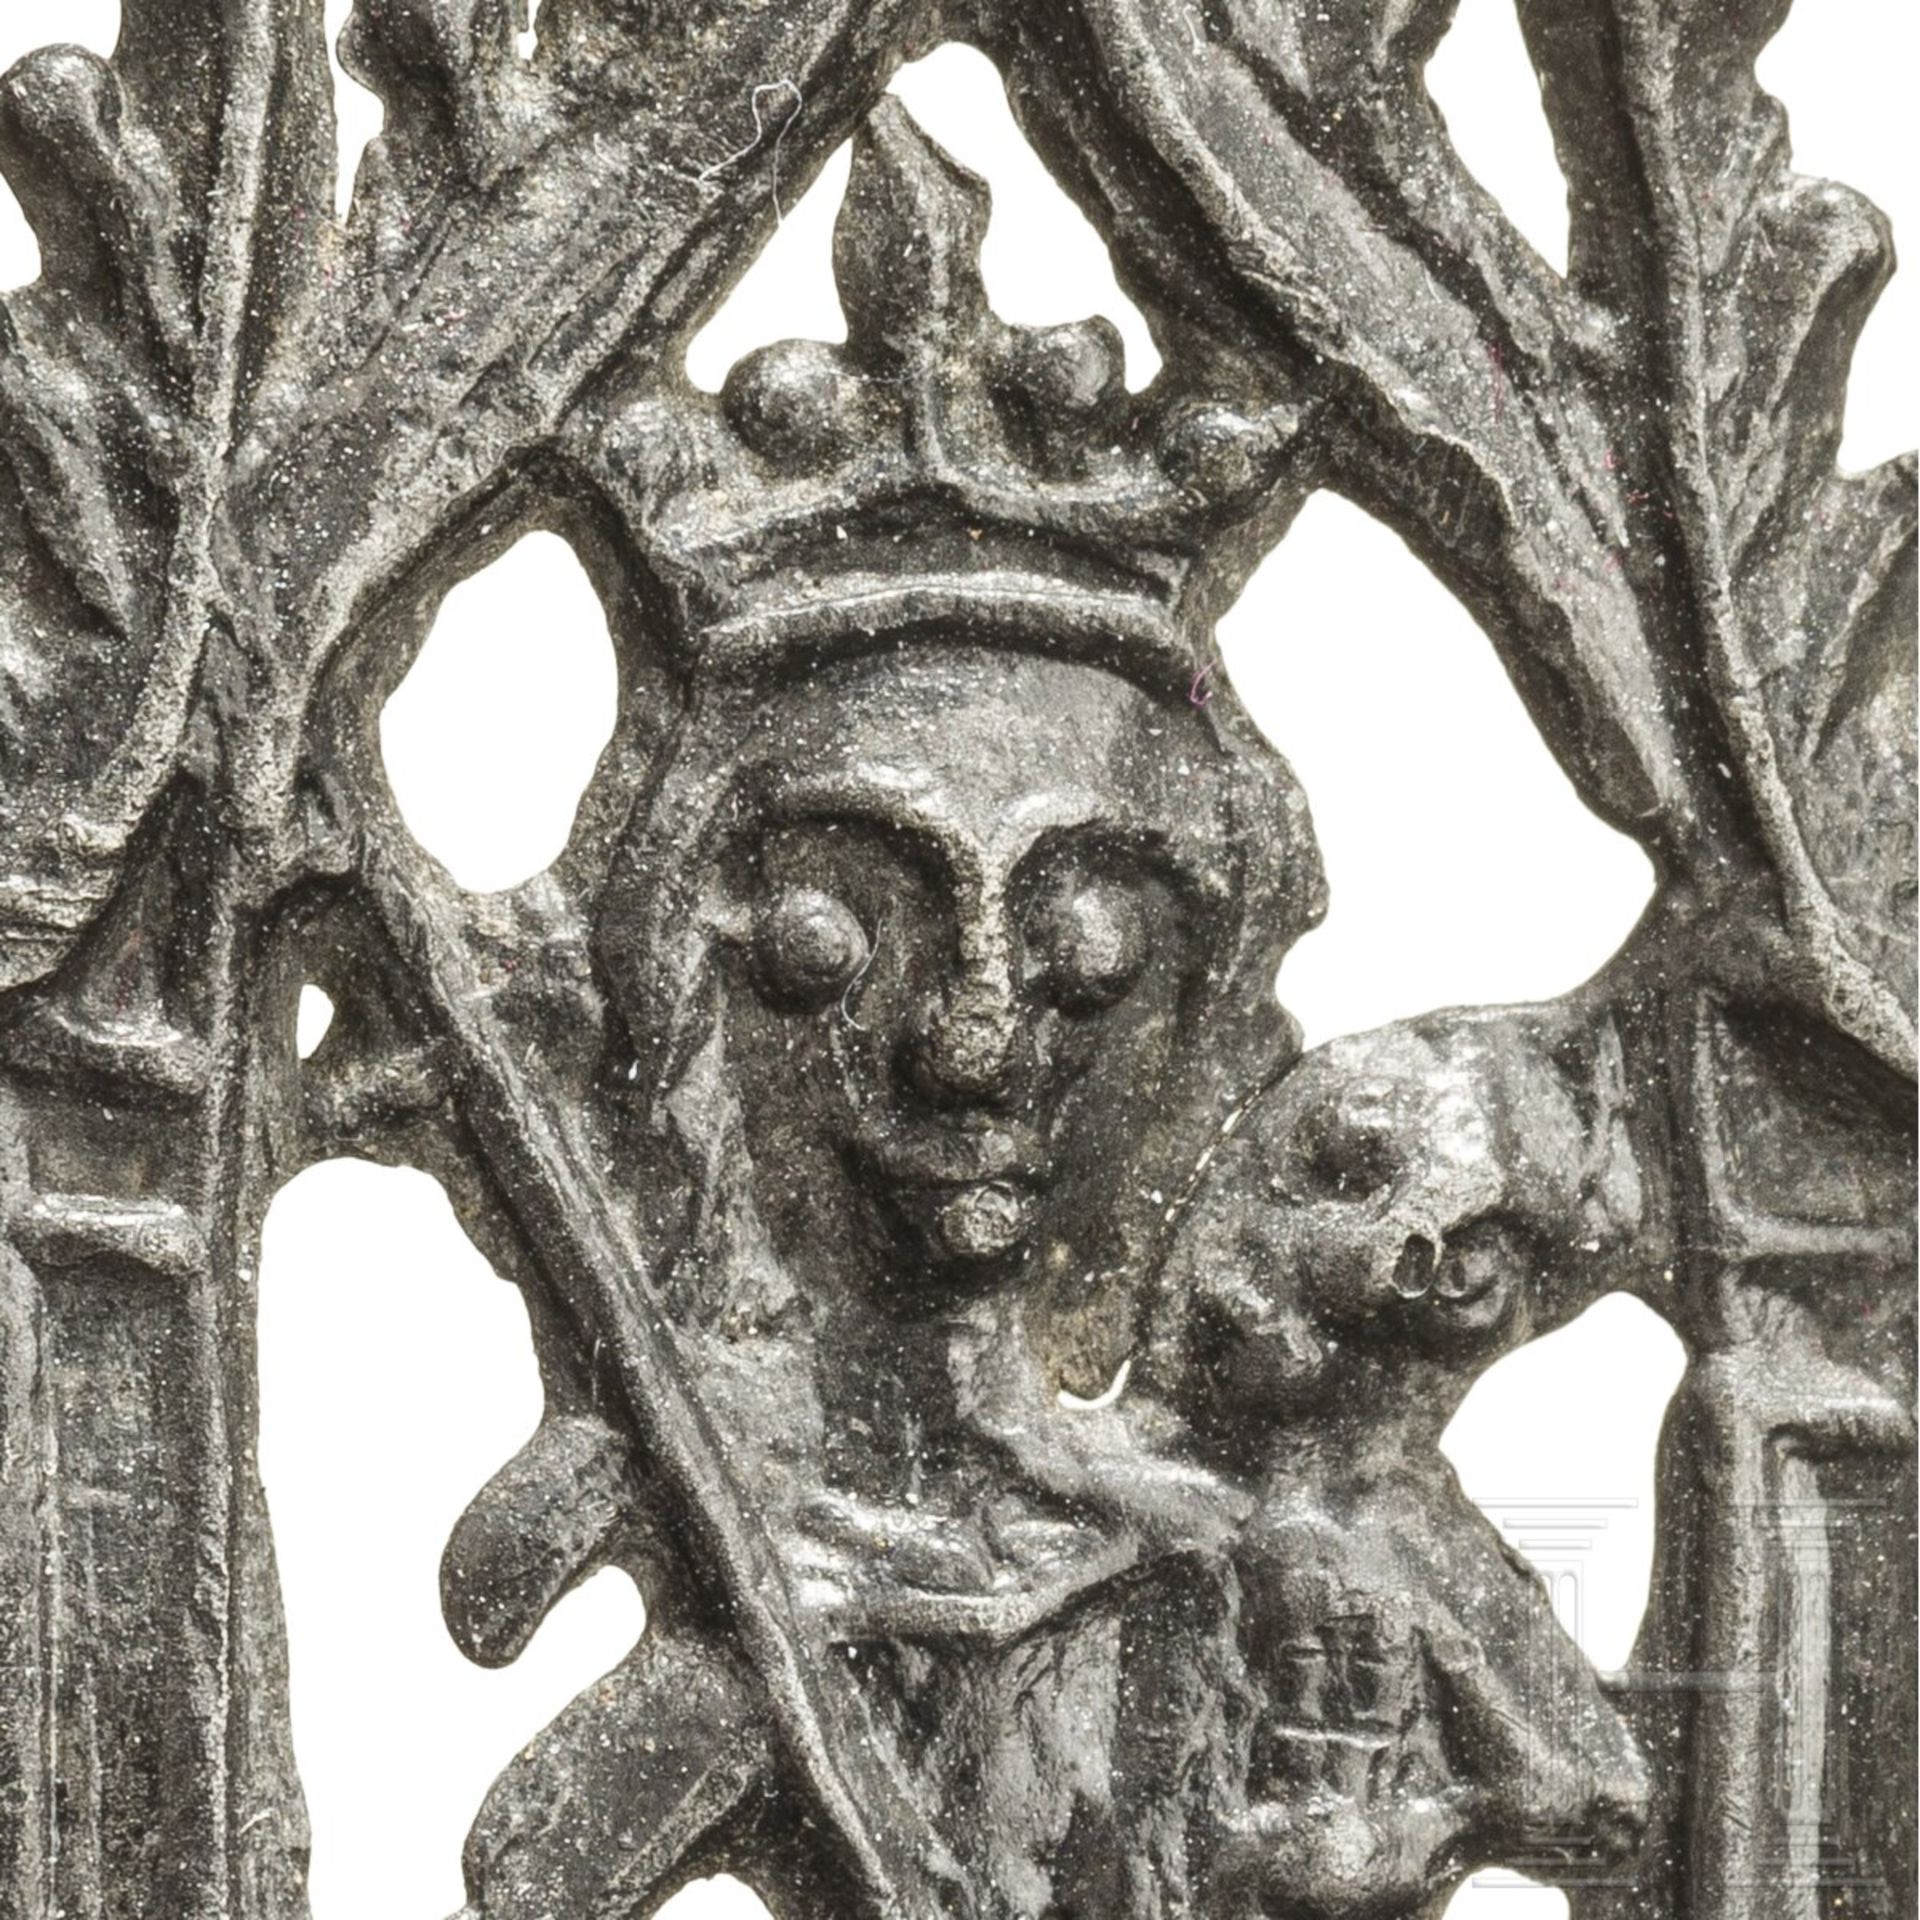 Pilgerabzeichen aus Zinn, Niederlande, um 1400 - Image 3 of 3